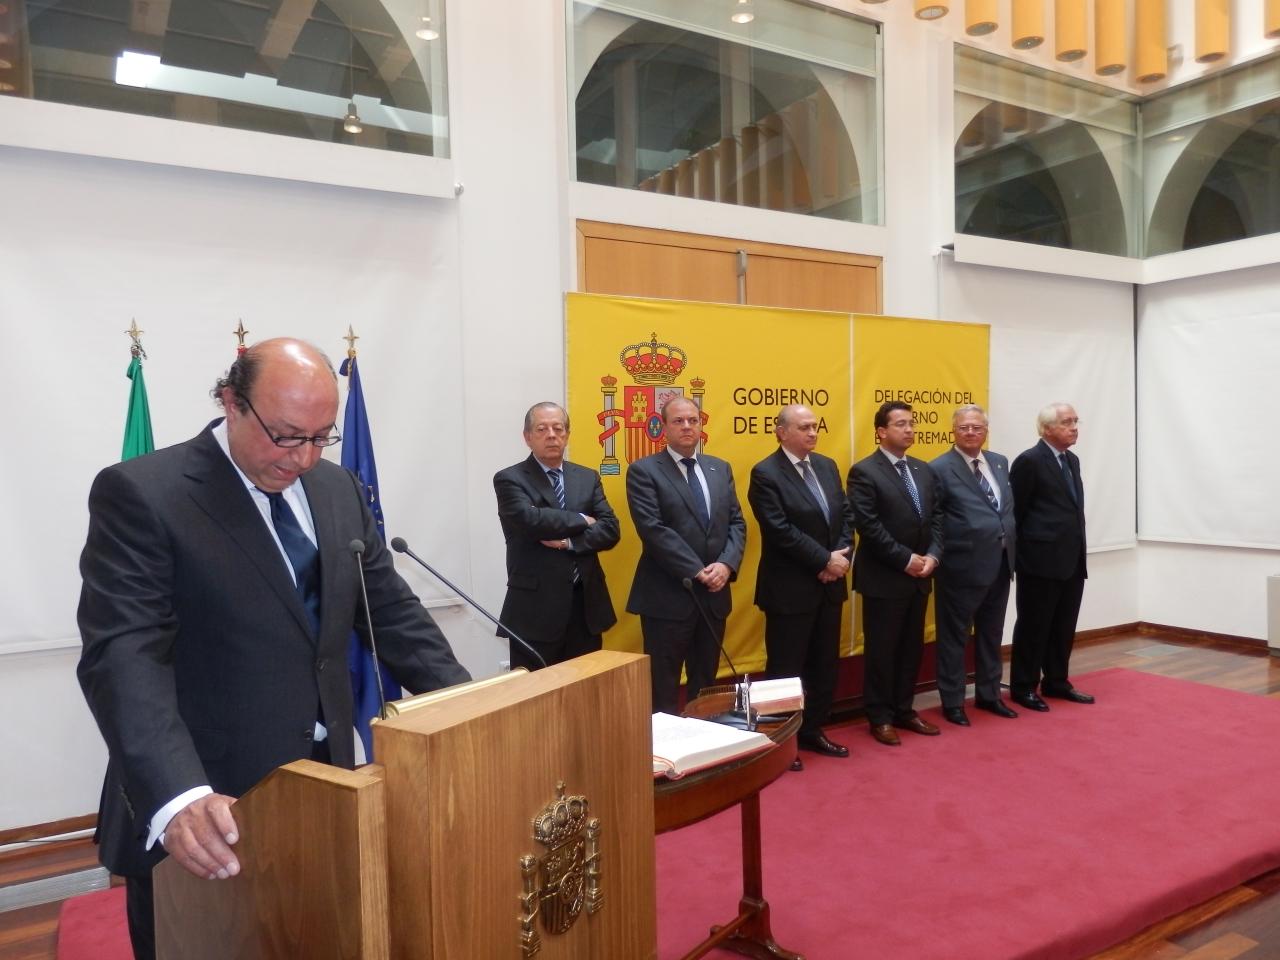 El Ministro del Interior, Jorge Fernández, ha presidido la toma de posesión del nuevo Delegado del Gobierno en Extremadura, Germán López Iglesias